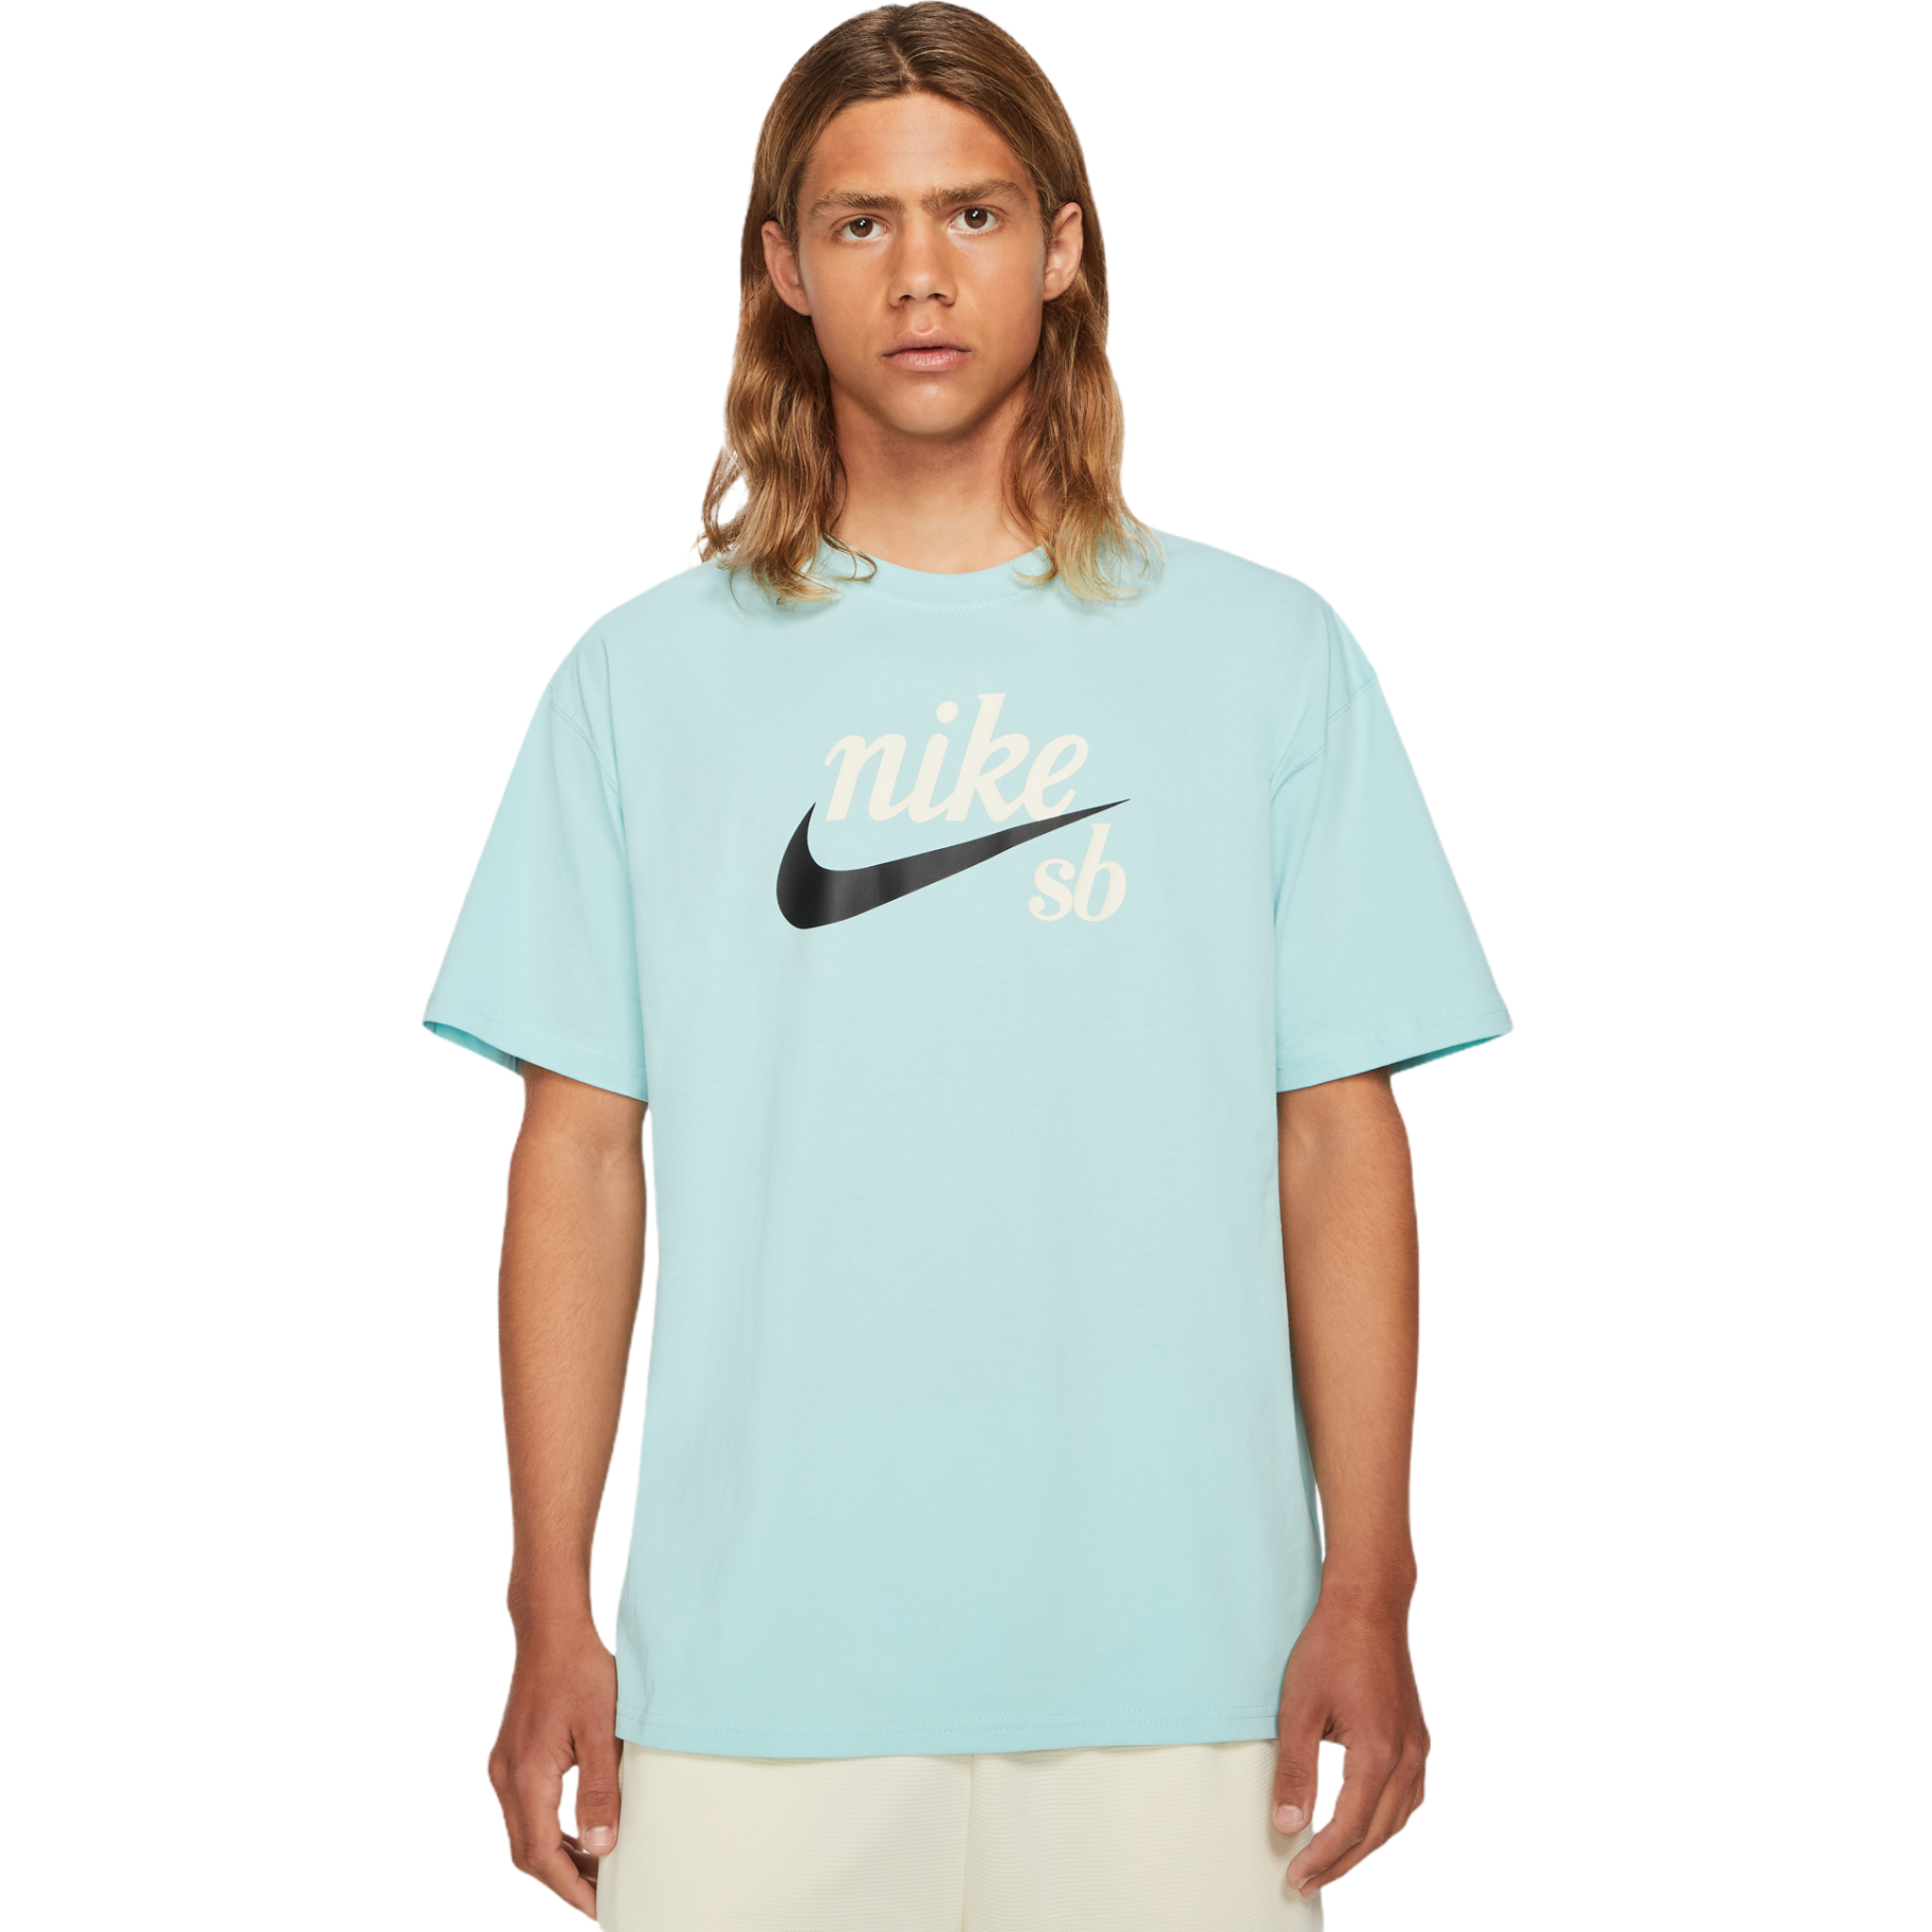 kanker kolonie wakker worden Nike SB Skate Shirt Light Dew - Orchard Skateshop